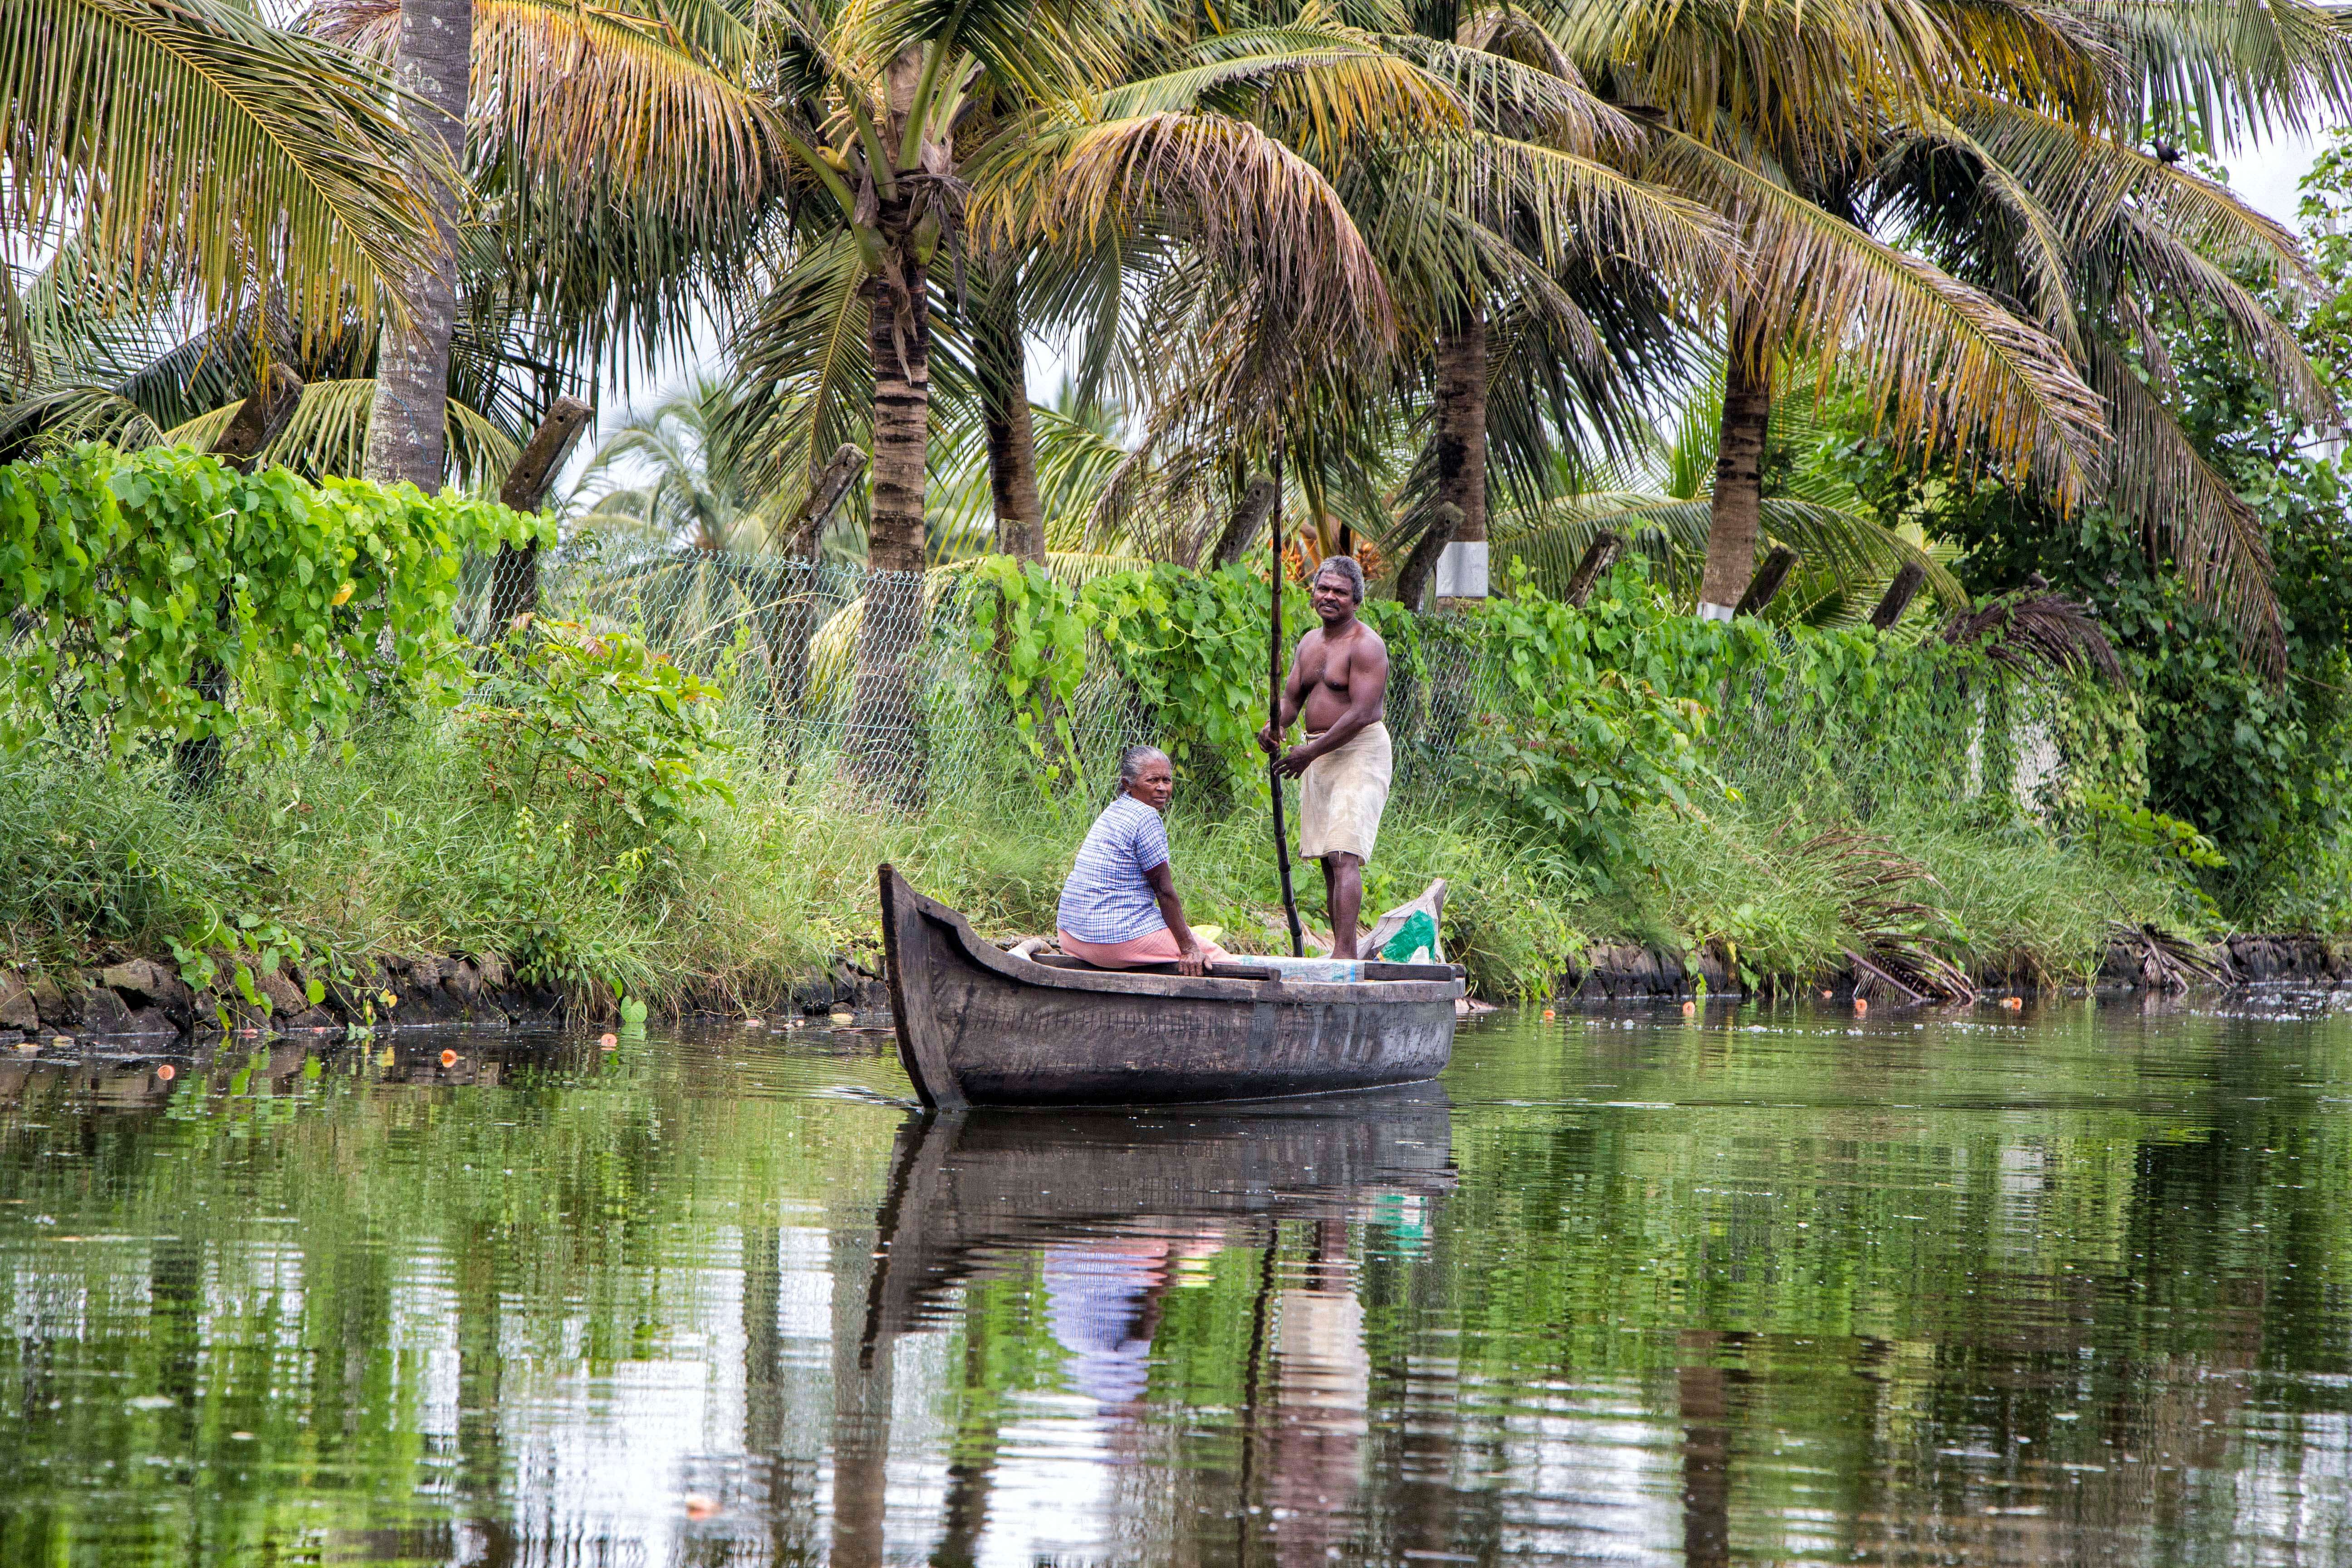 The Kerala backwaters, India